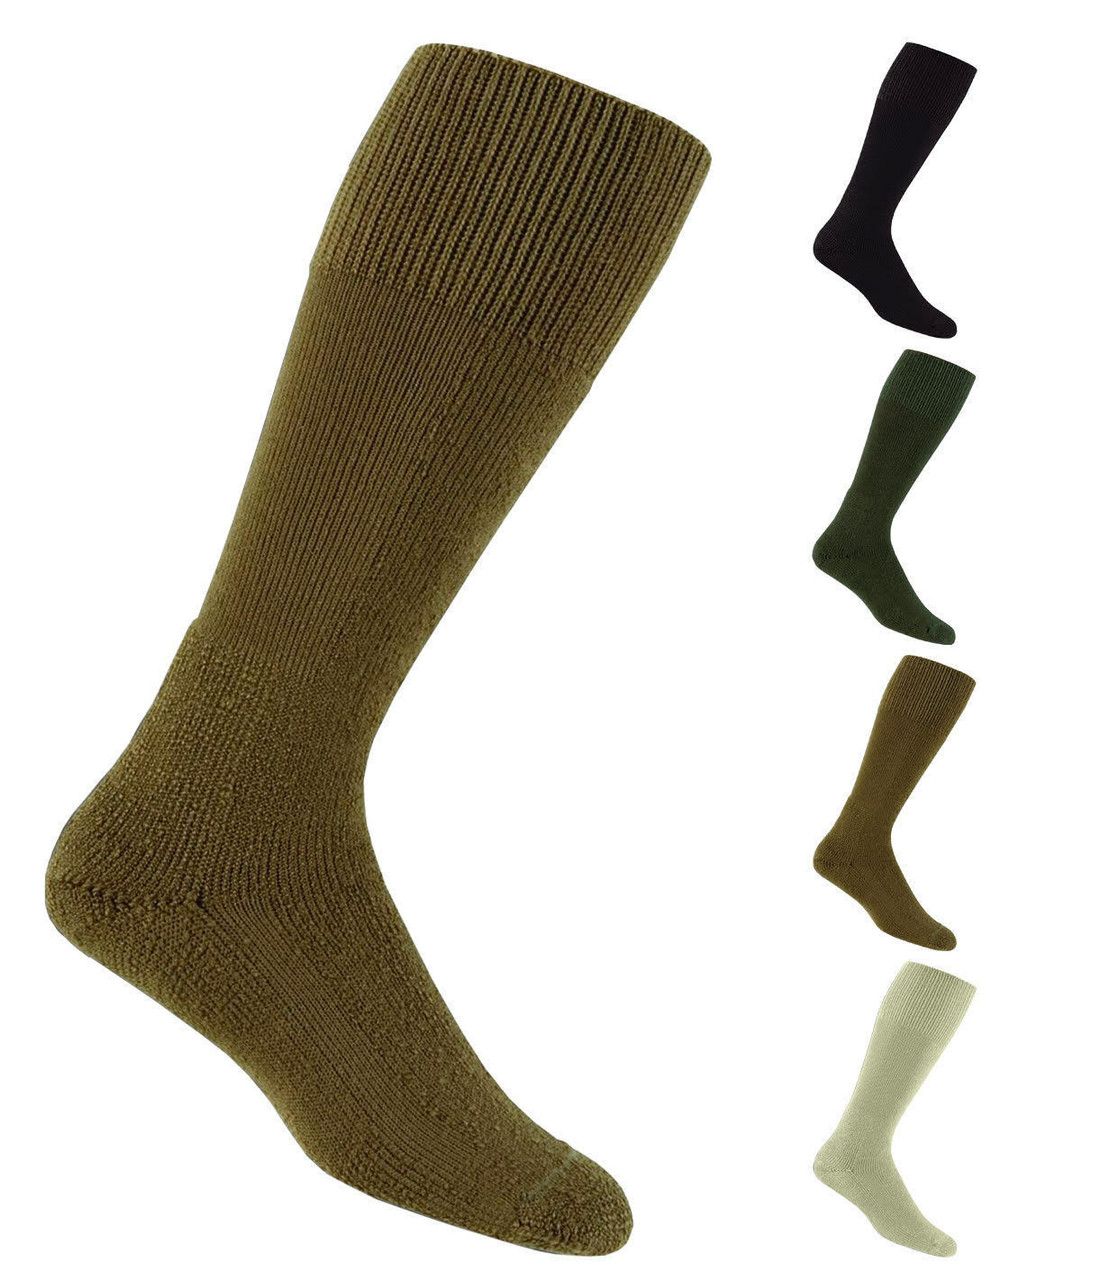 thorlo combat boot socks